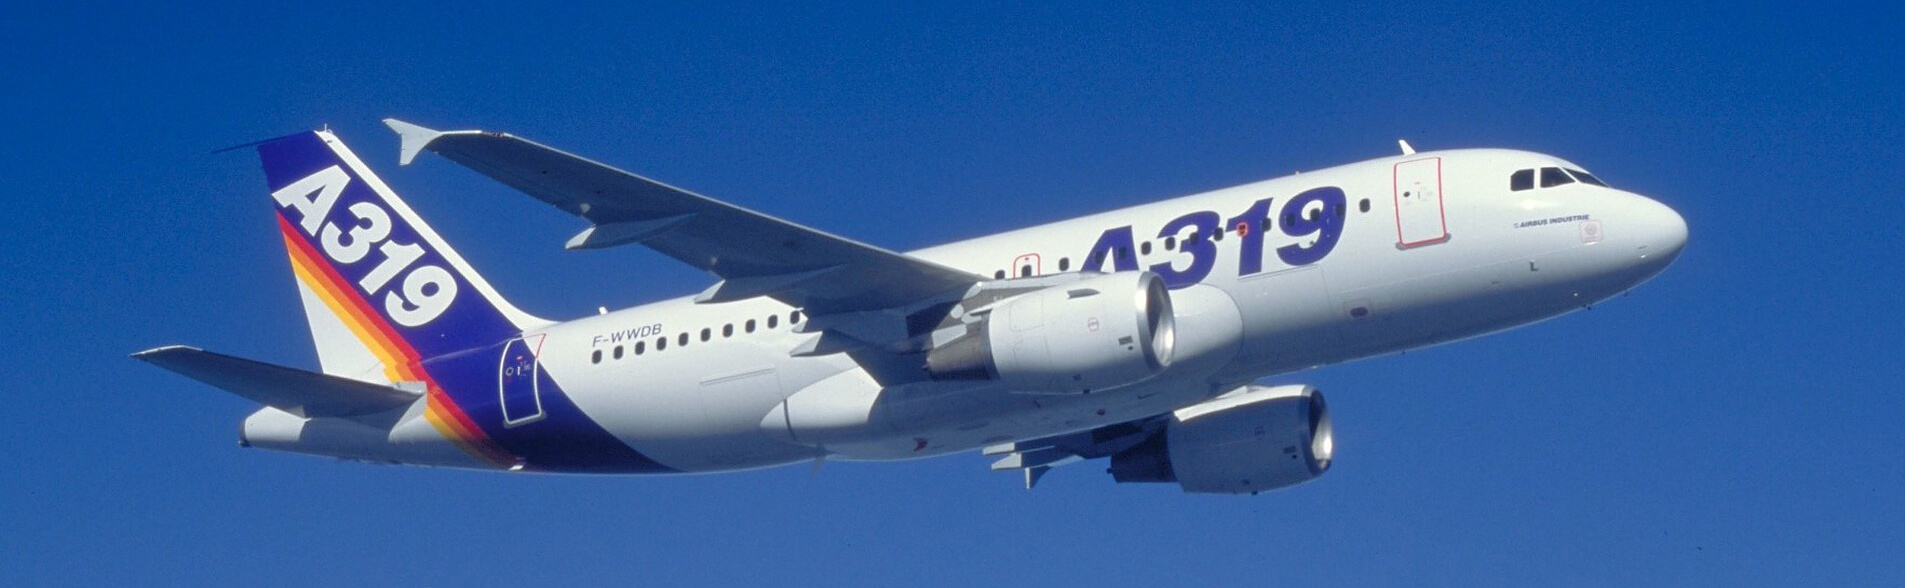 Airbus A319 Sitzplätze